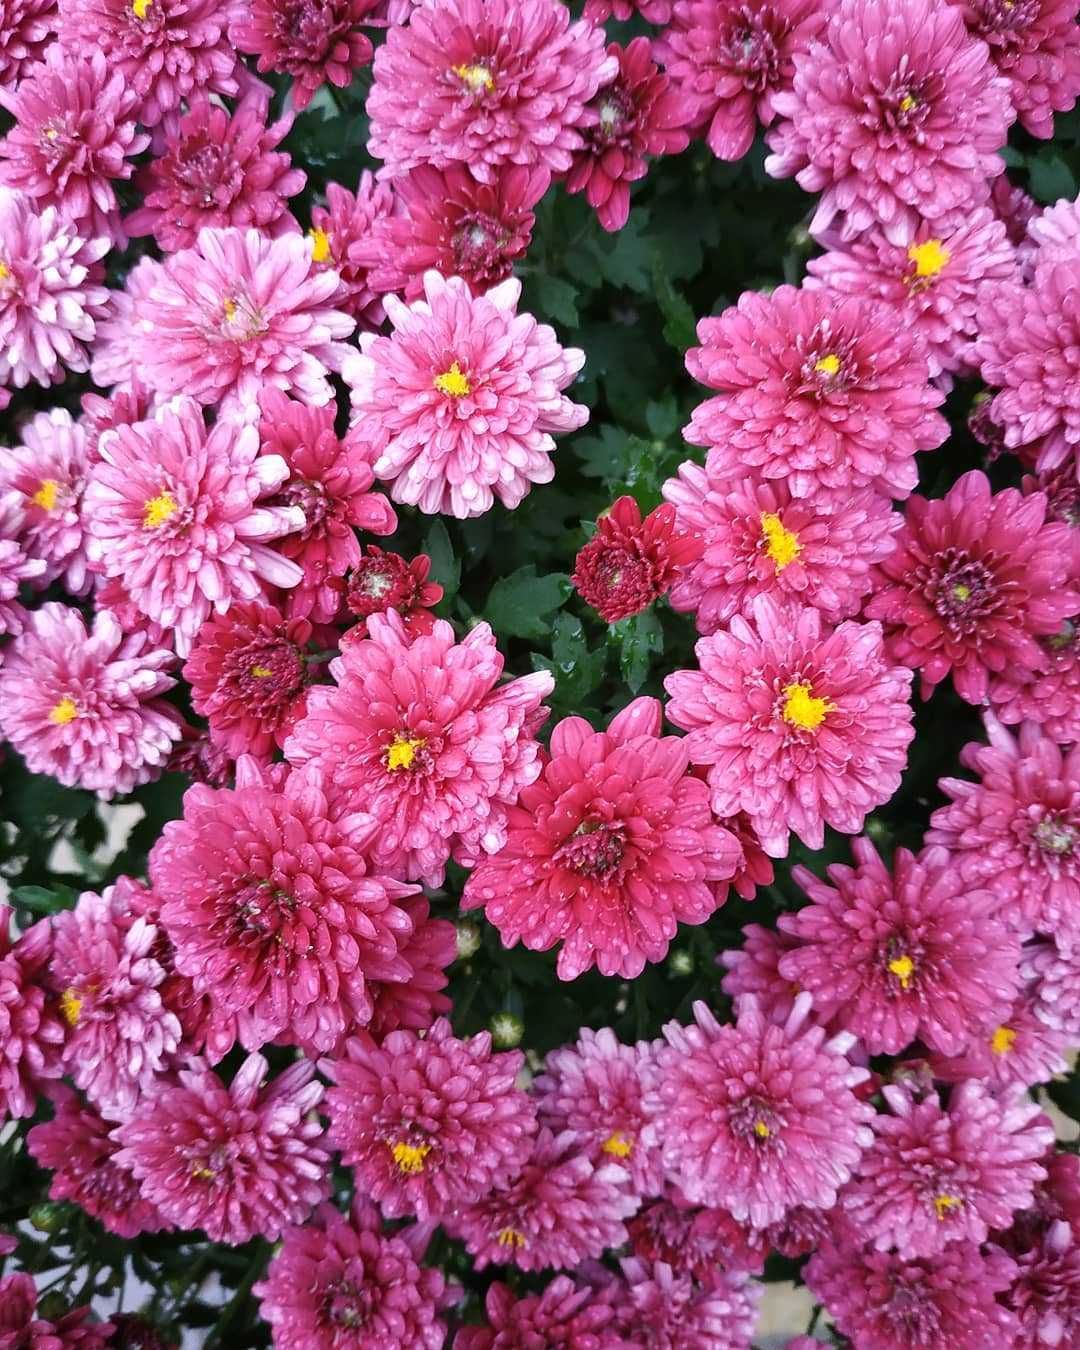 Chrysanthemum cluster